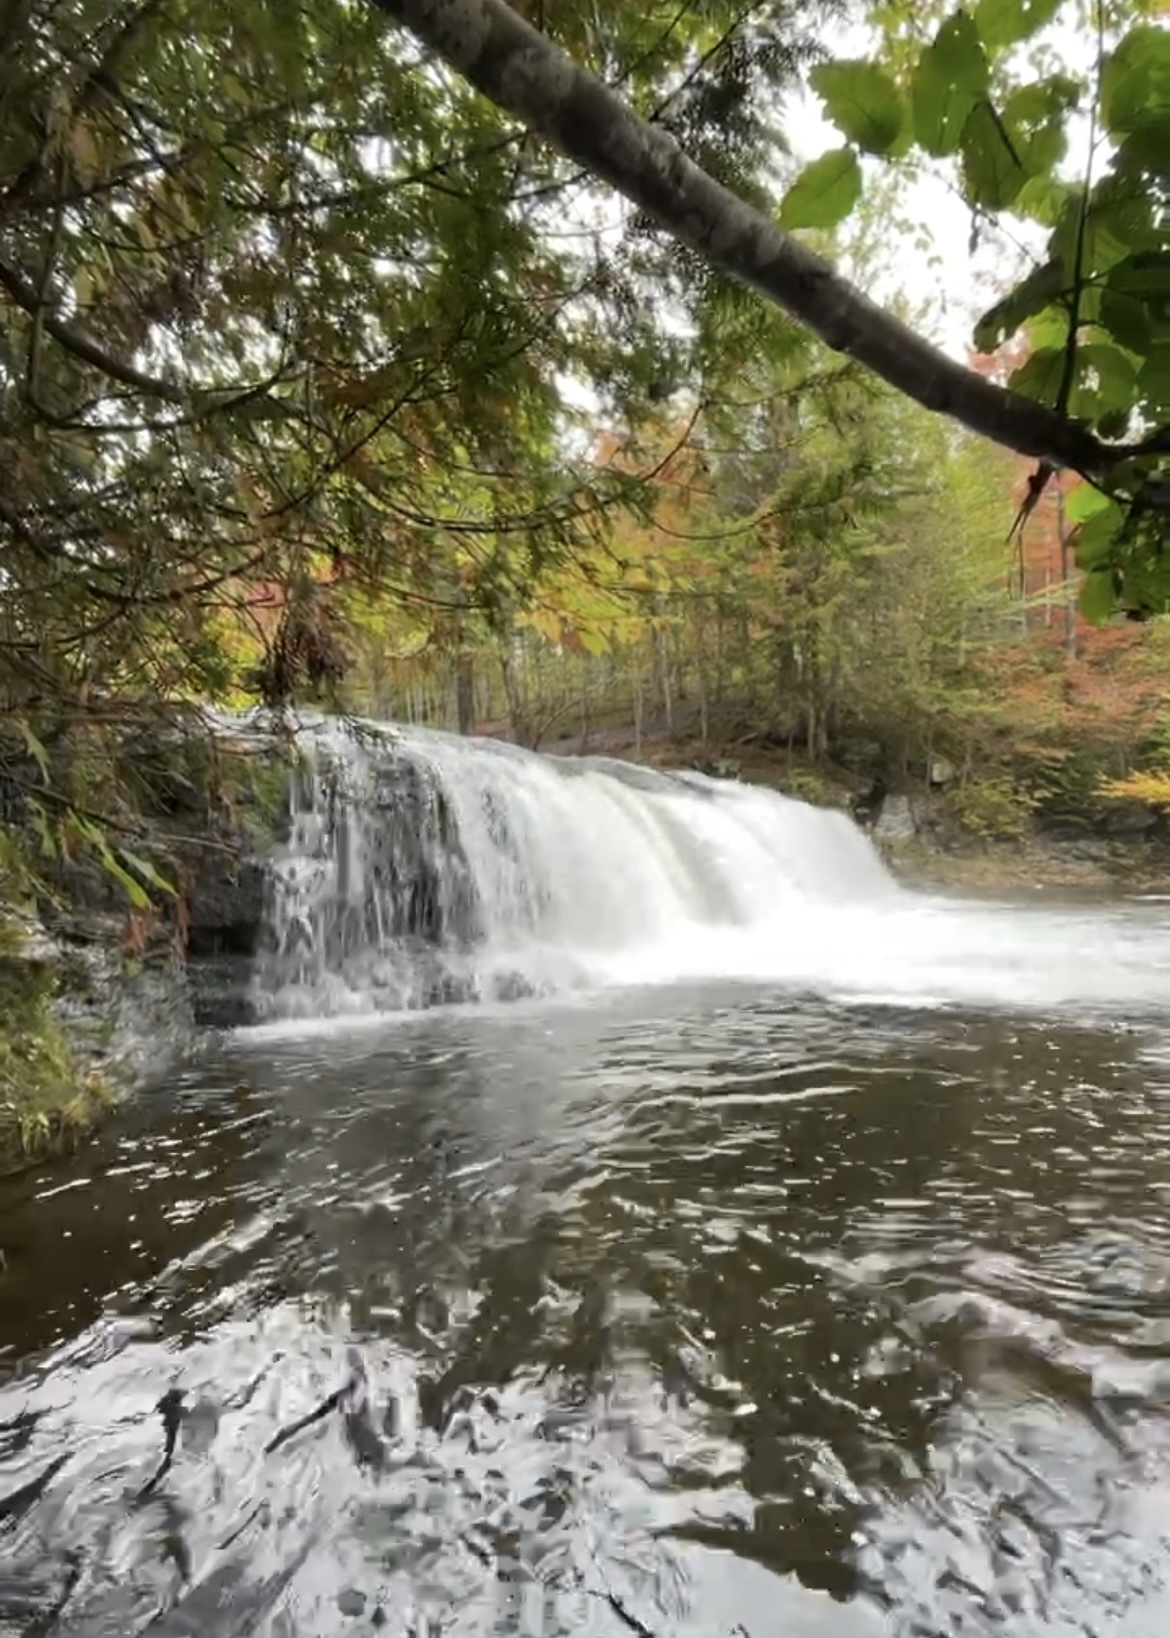 Video still of Dunbar Falls